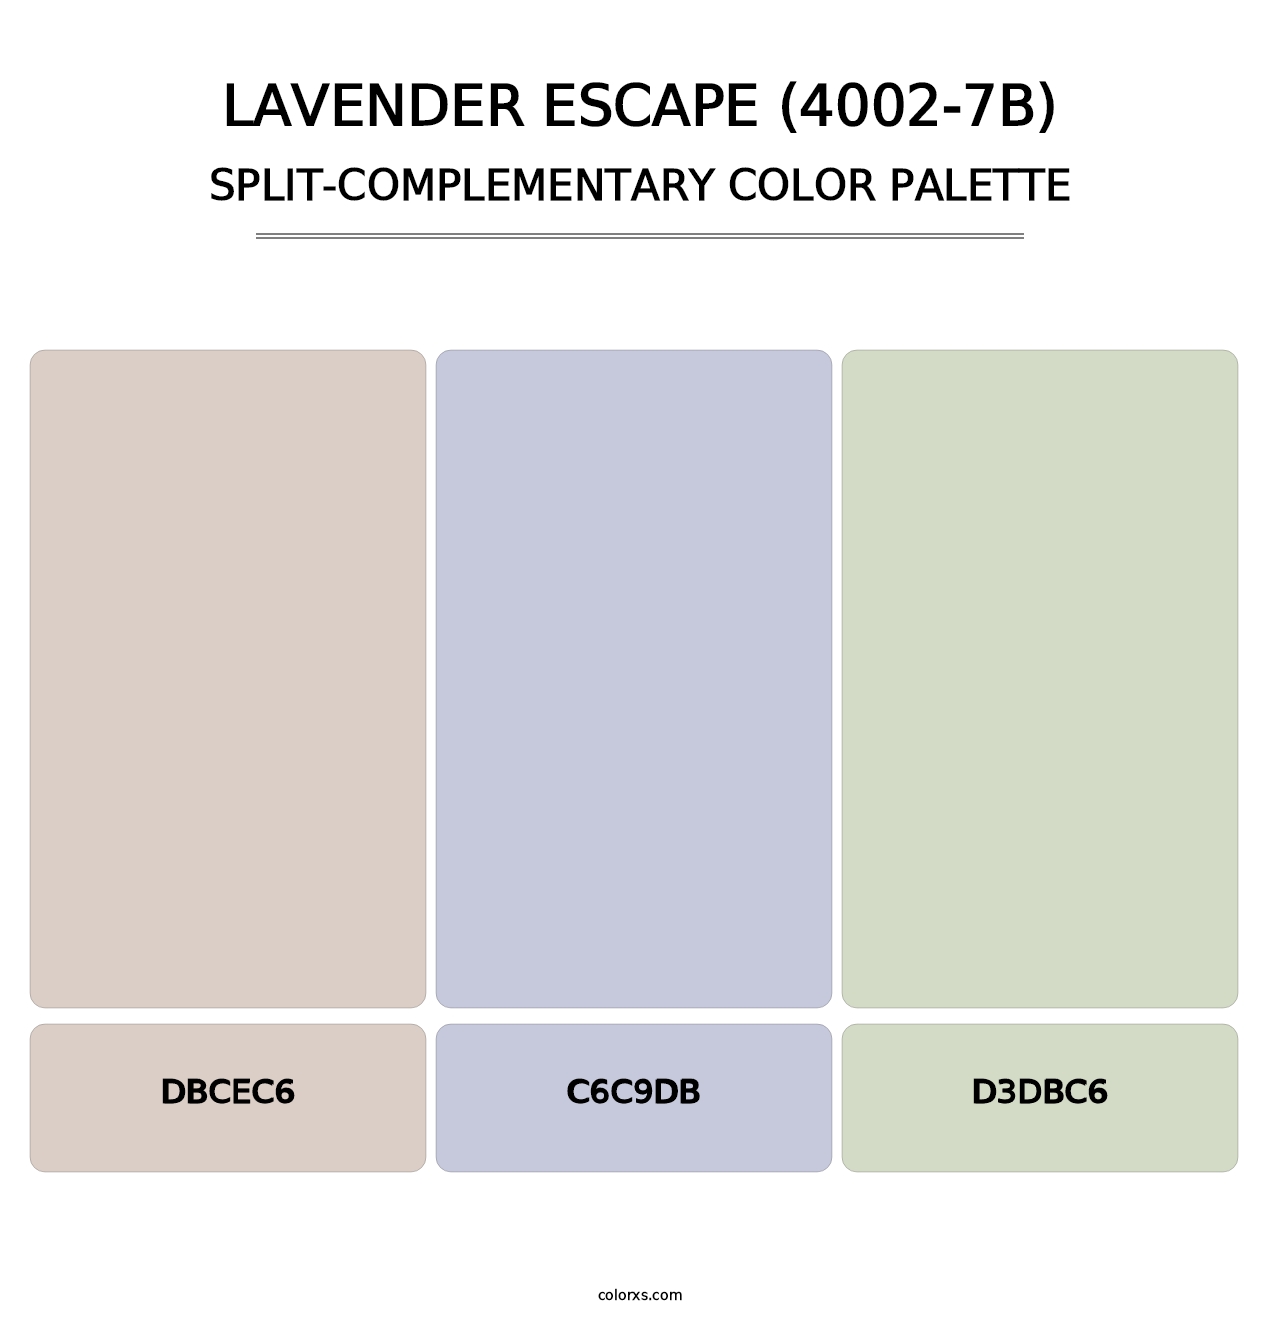 Lavender Escape (4002-7B) - Split-Complementary Color Palette